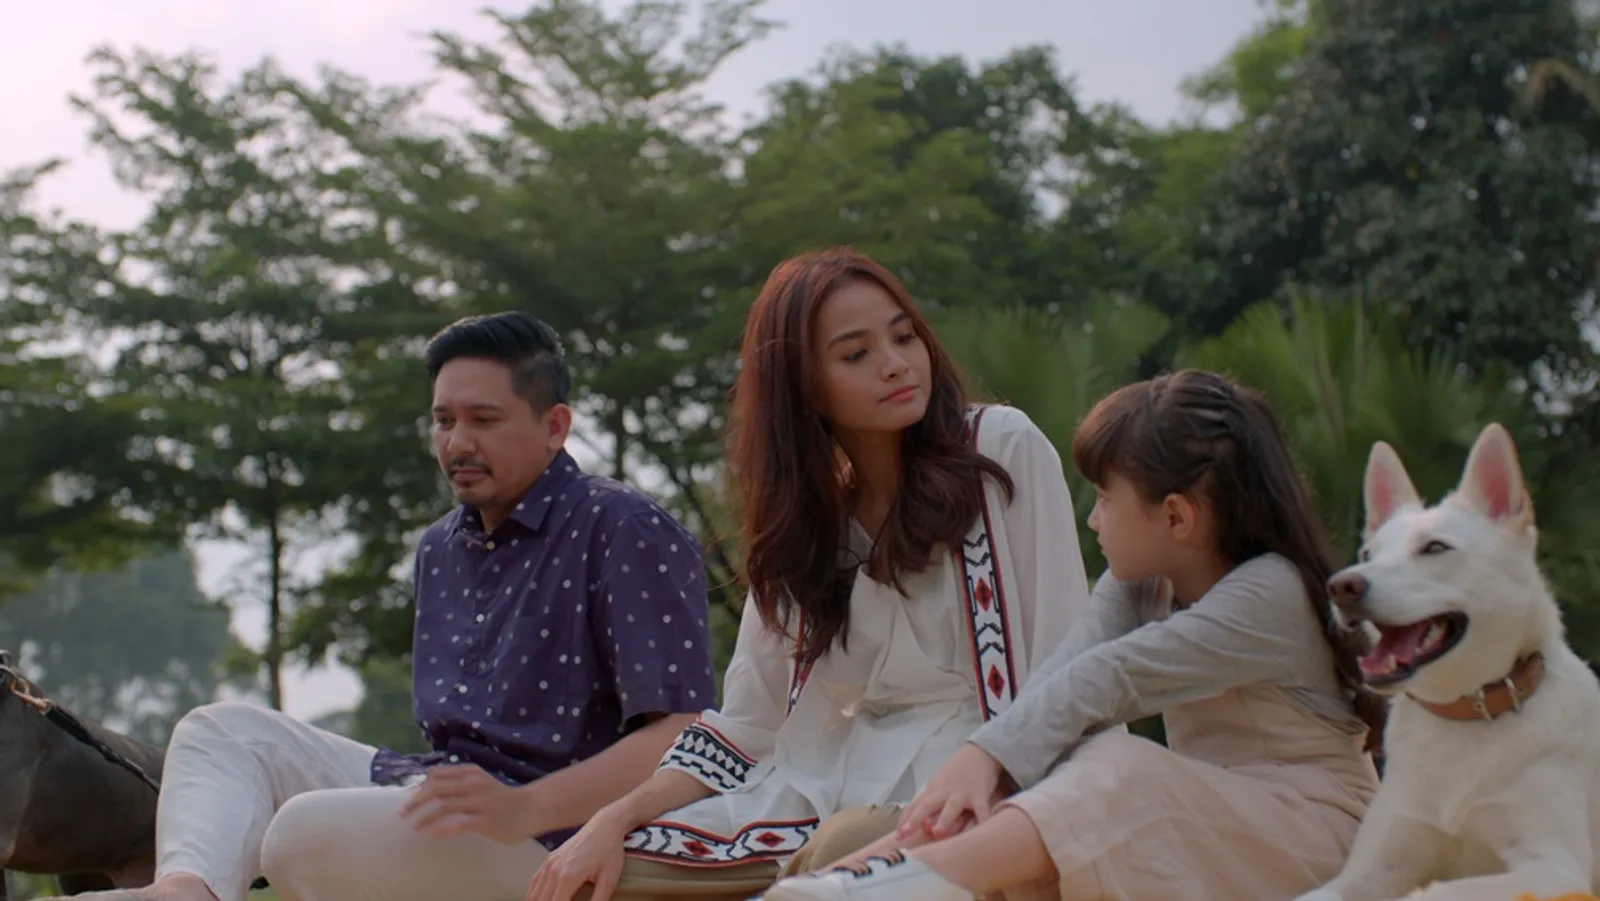 Tayang Minggu Ini, 5 Fakta Seru di Balik Film 'June & Kopi'